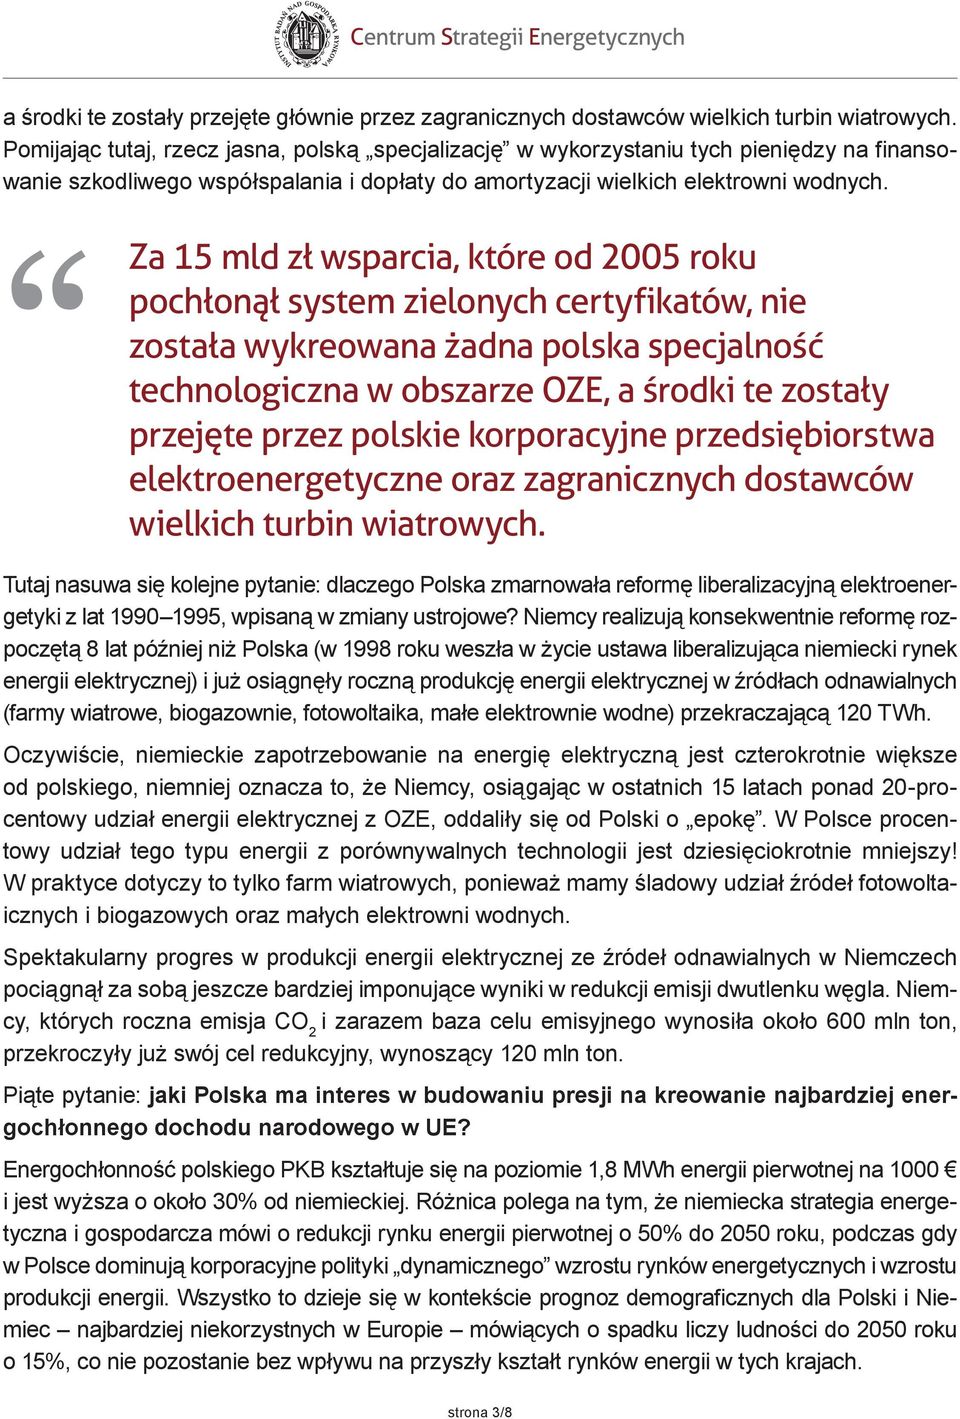 Za 15 mld zł wsparcia, które od 2005 roku pochłonął system zielonych certyfikatów, nie została wykreowana żadna polska specjalność technologiczna w obszarze OZE, a środki te zostały przejęte przez